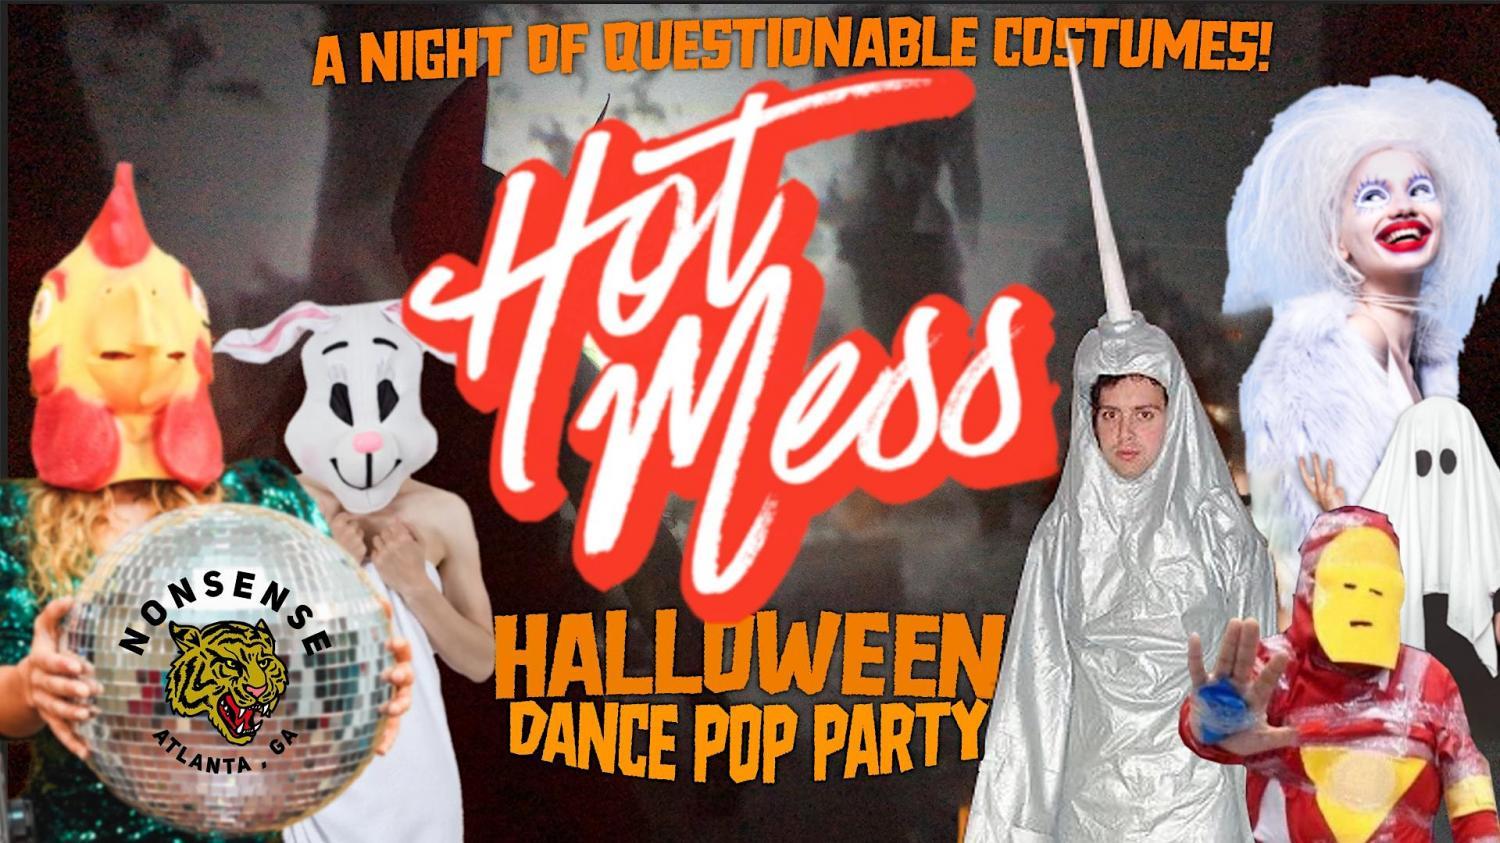 Hot Mess Halloween Dance Pop Party
Fri Oct 21, 10:00 PM - Sat Oct 22, 3:00 AM
in 2 days